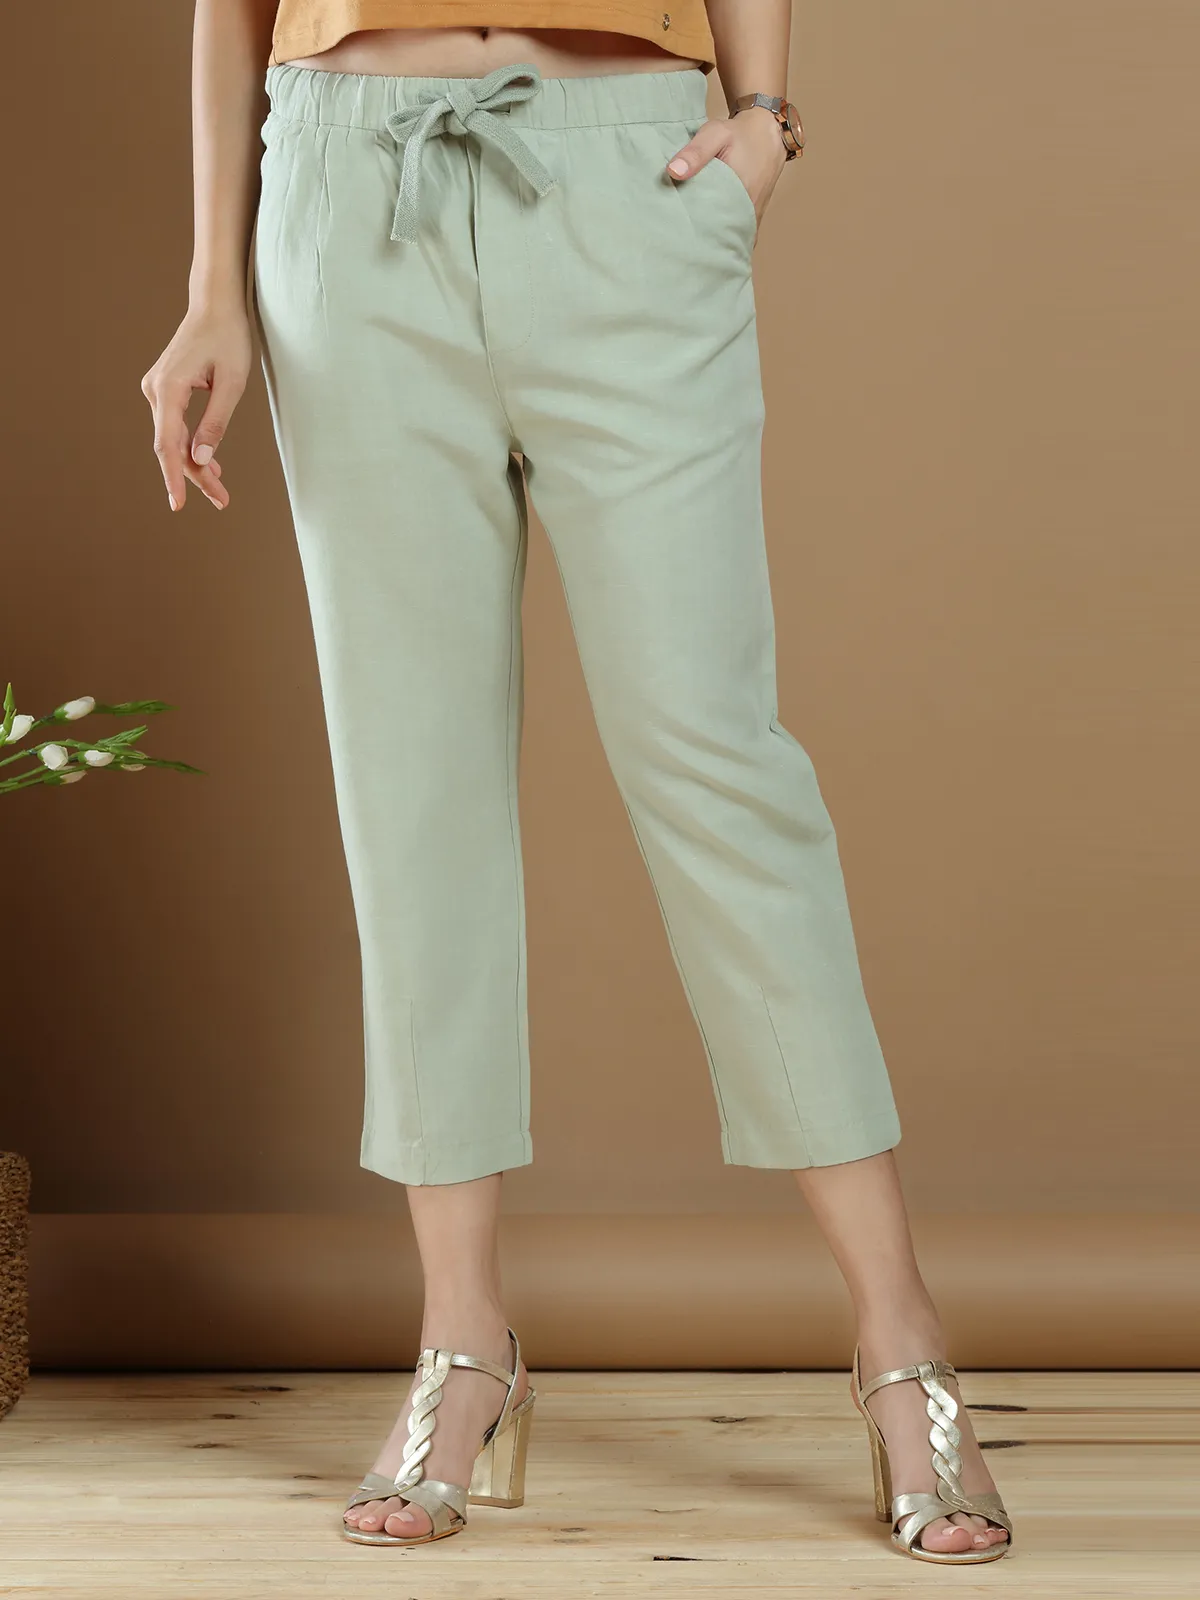 Pistachio green cotton plain pant for casual wear